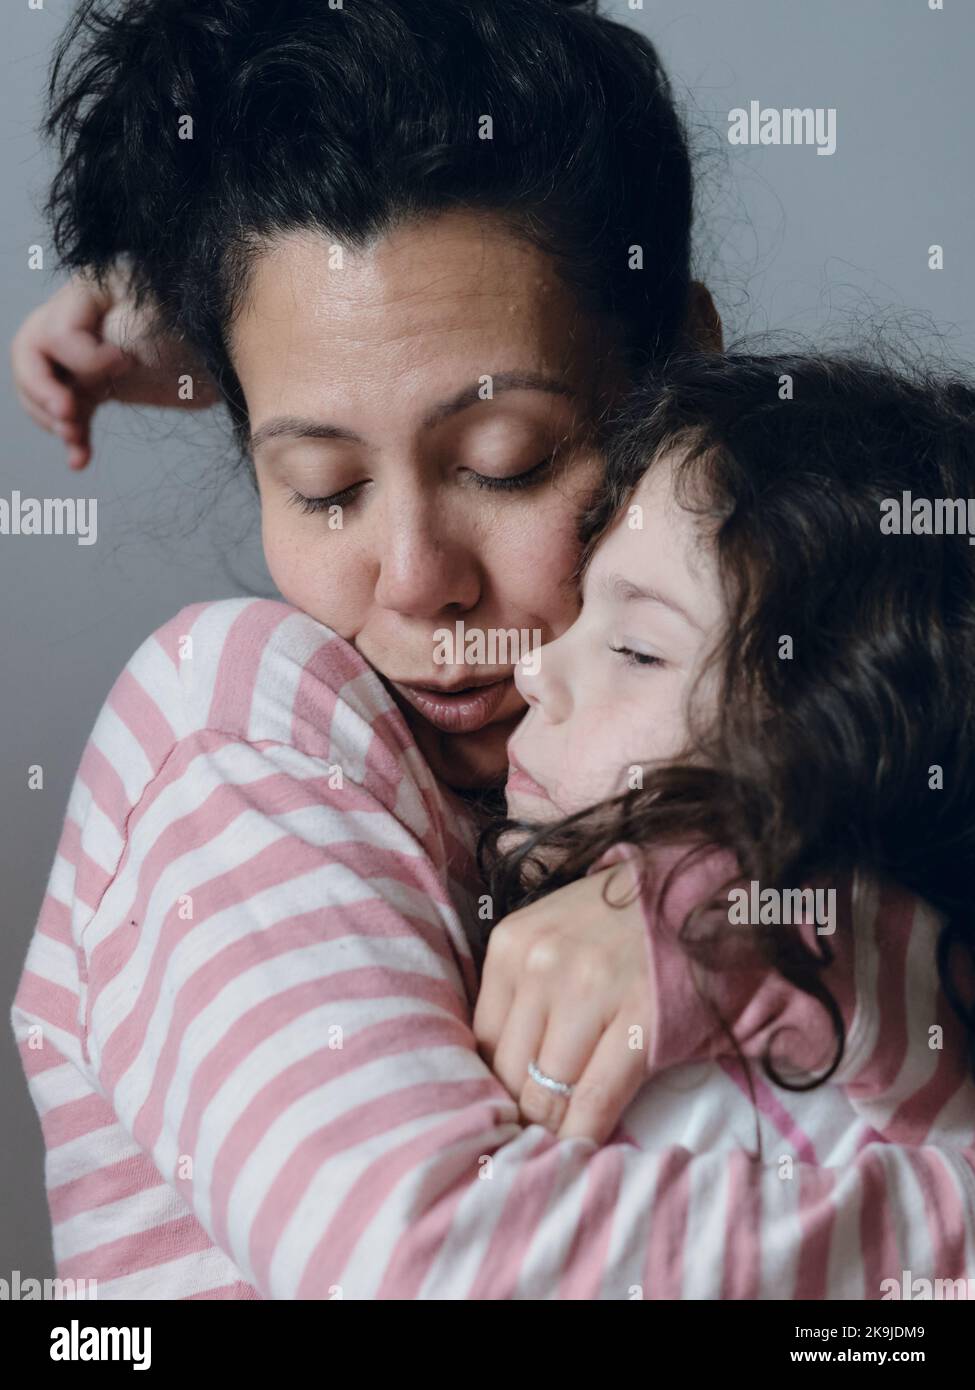 Une petite fille contrariée étant consolée par sa mère Banque D'Images